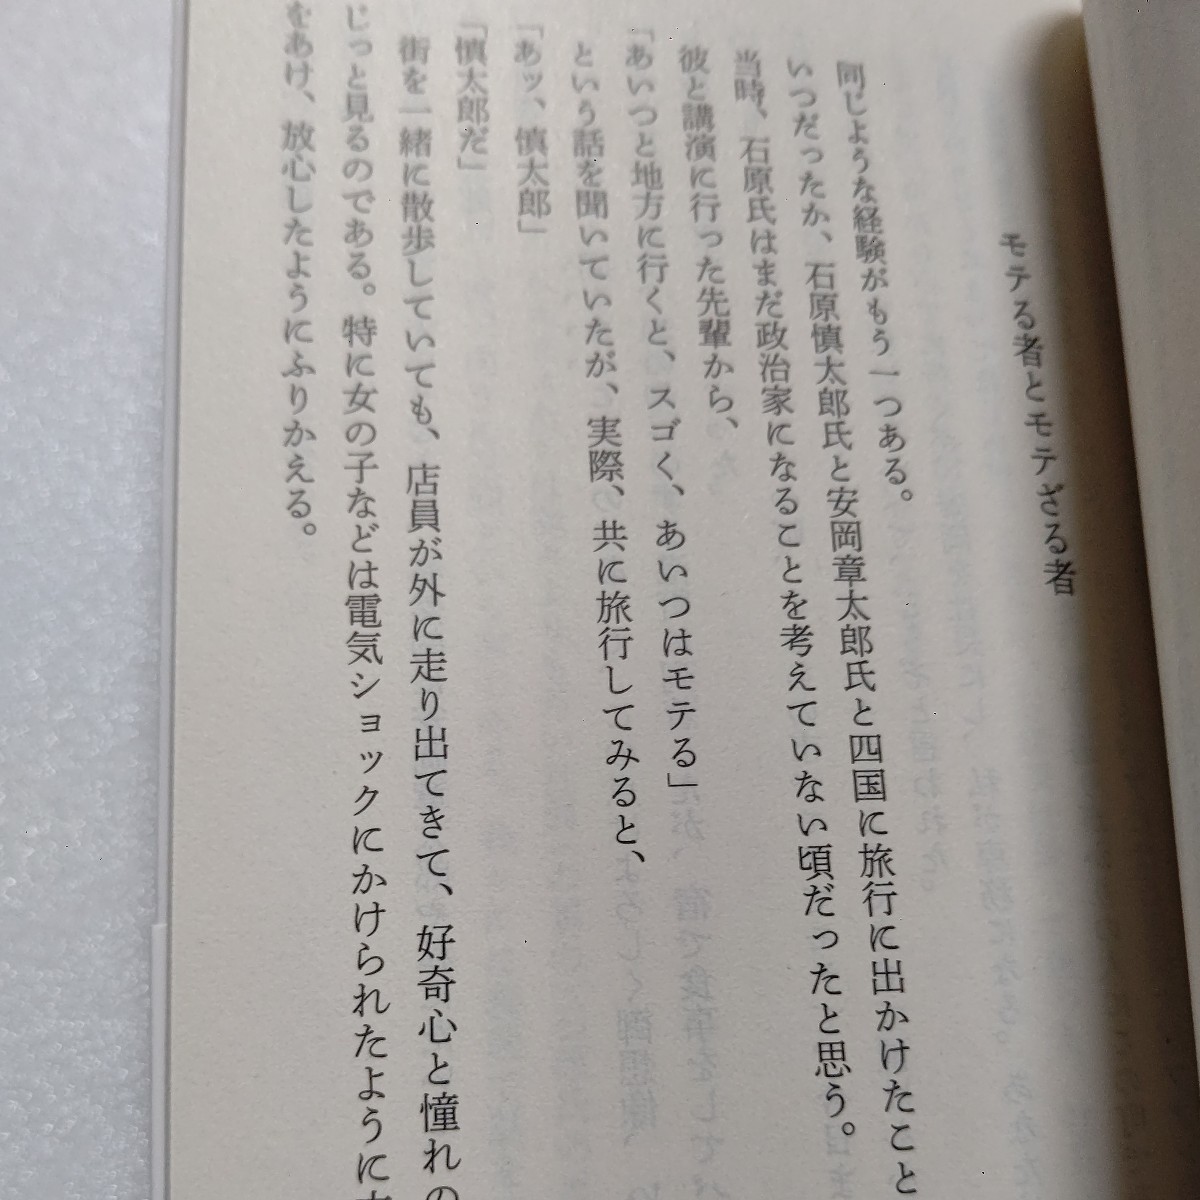  прекрасный товар . no. . главный резюме Endo Shusaku ..... был! низкий пустой полет экспертиза недостаточность дом .... плач .. плач . нет jig The g юность история автор .. запись Sakura ... др. 